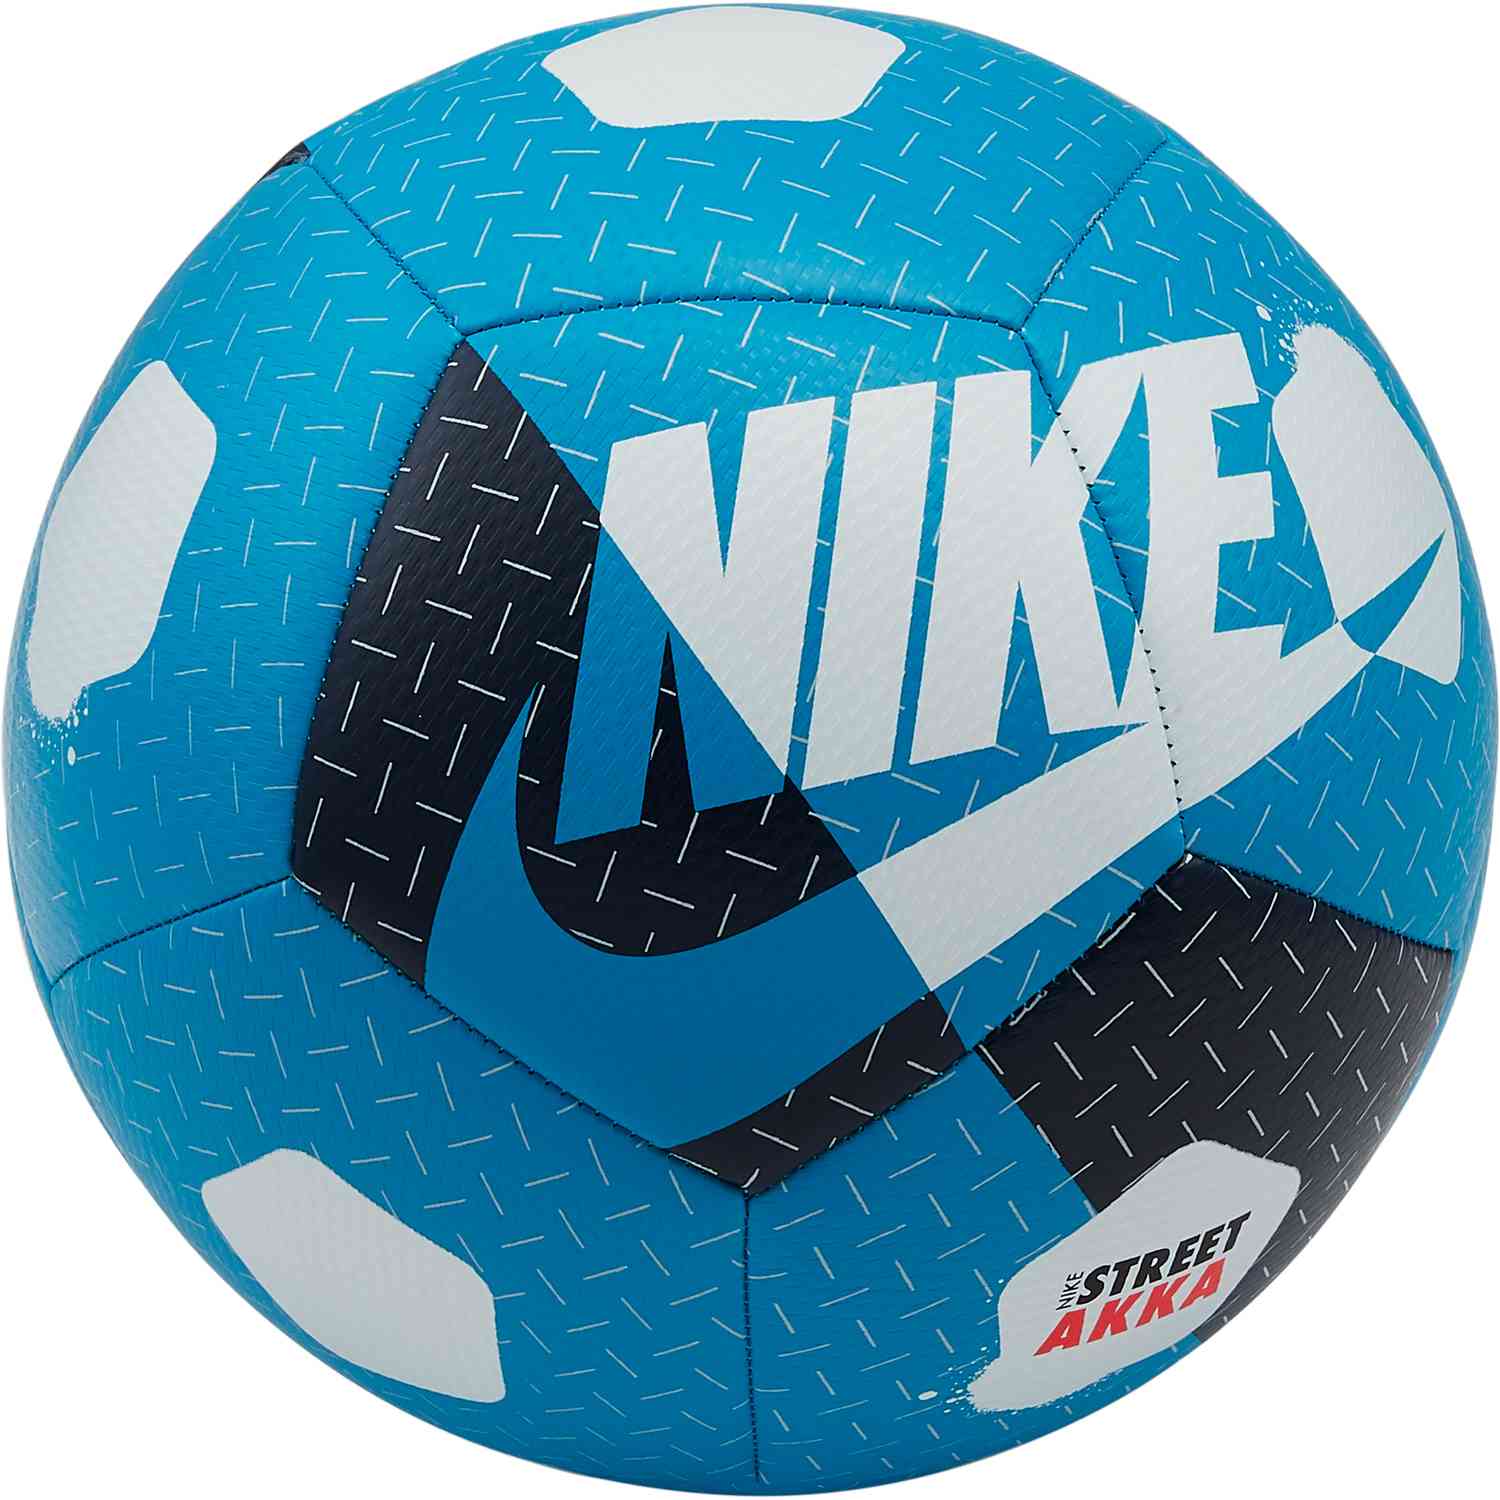 Nike Akka Street Soccer Ball - Laser 